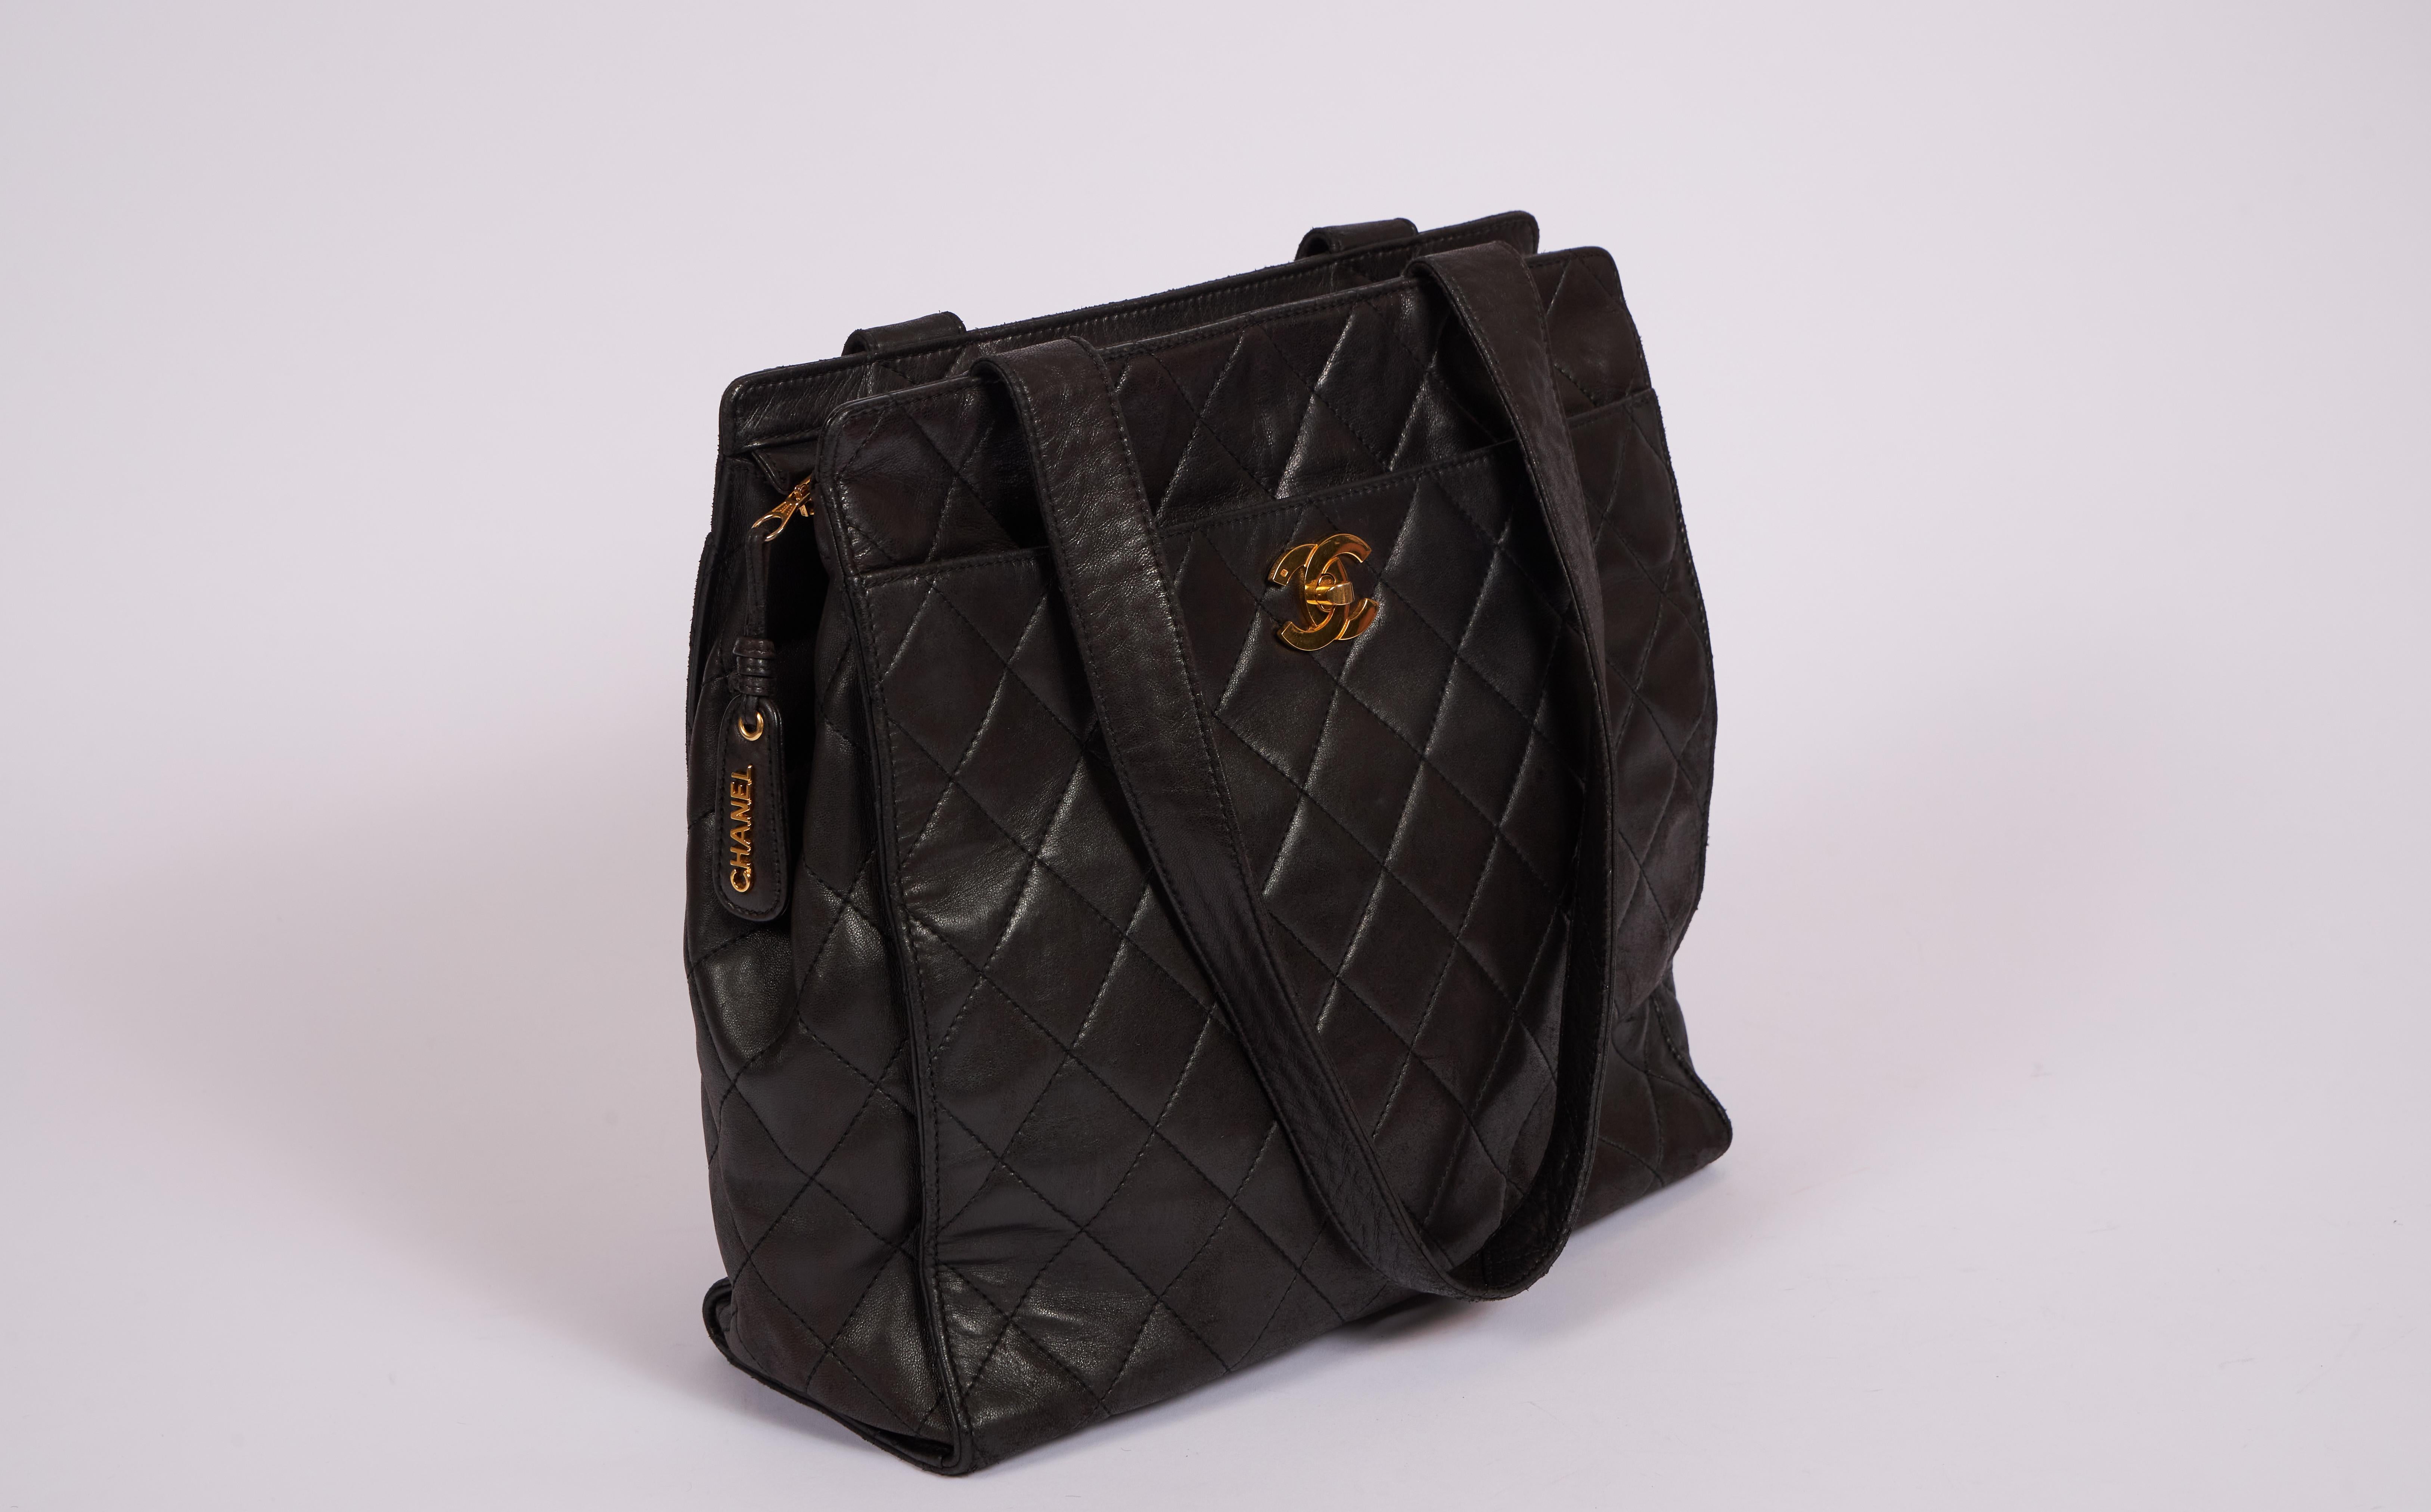 Chanel Vintage schwarzes Leder gesteppt große Schulter-Tasche mit mehreren Fächern. Griffsenkung 12